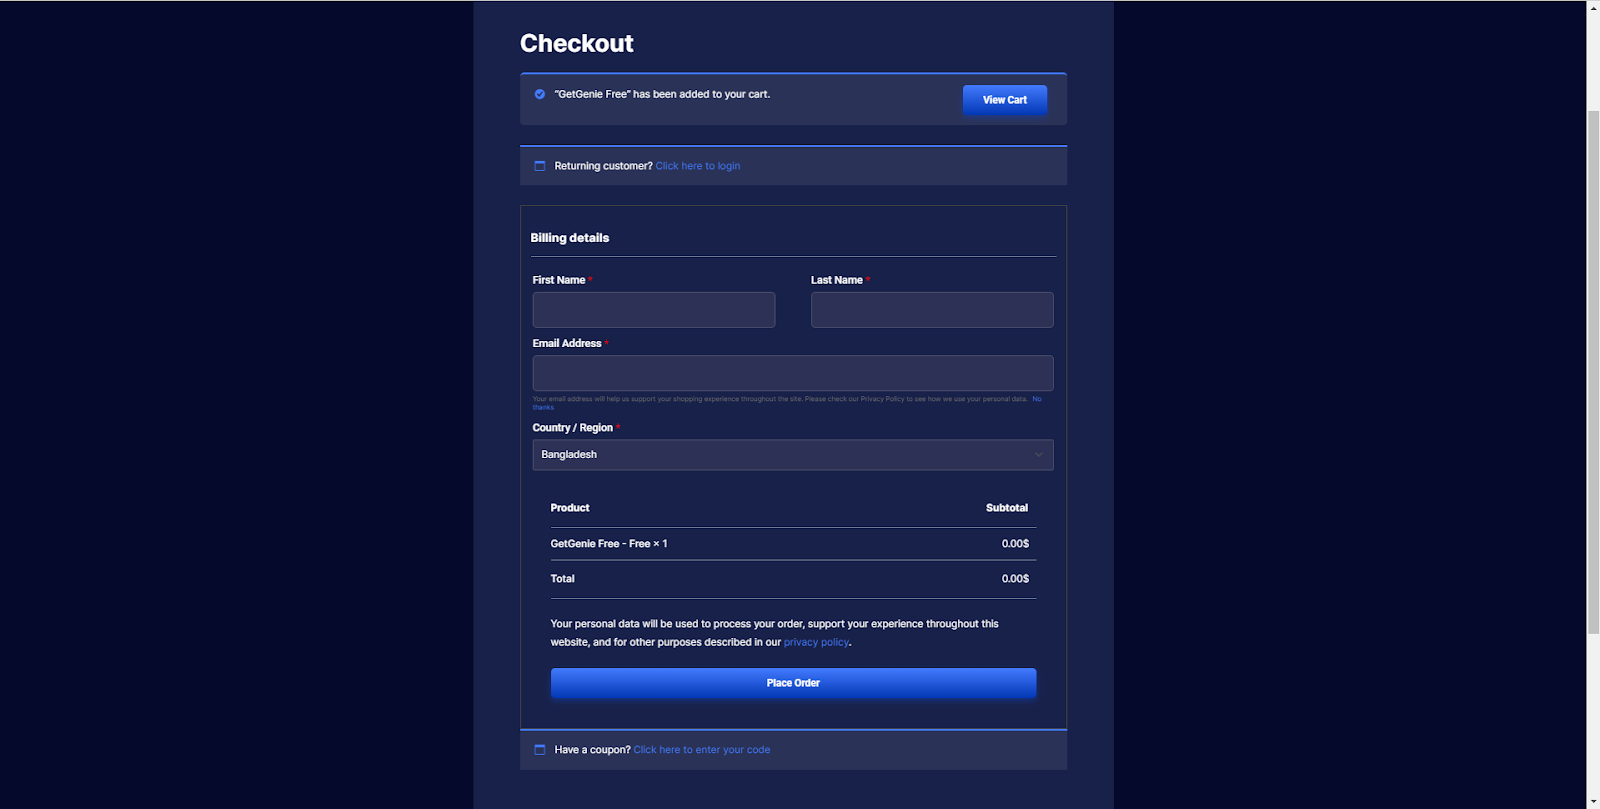 Checkout-Formular, um das GetGenie AI-Plugin zu erhalten